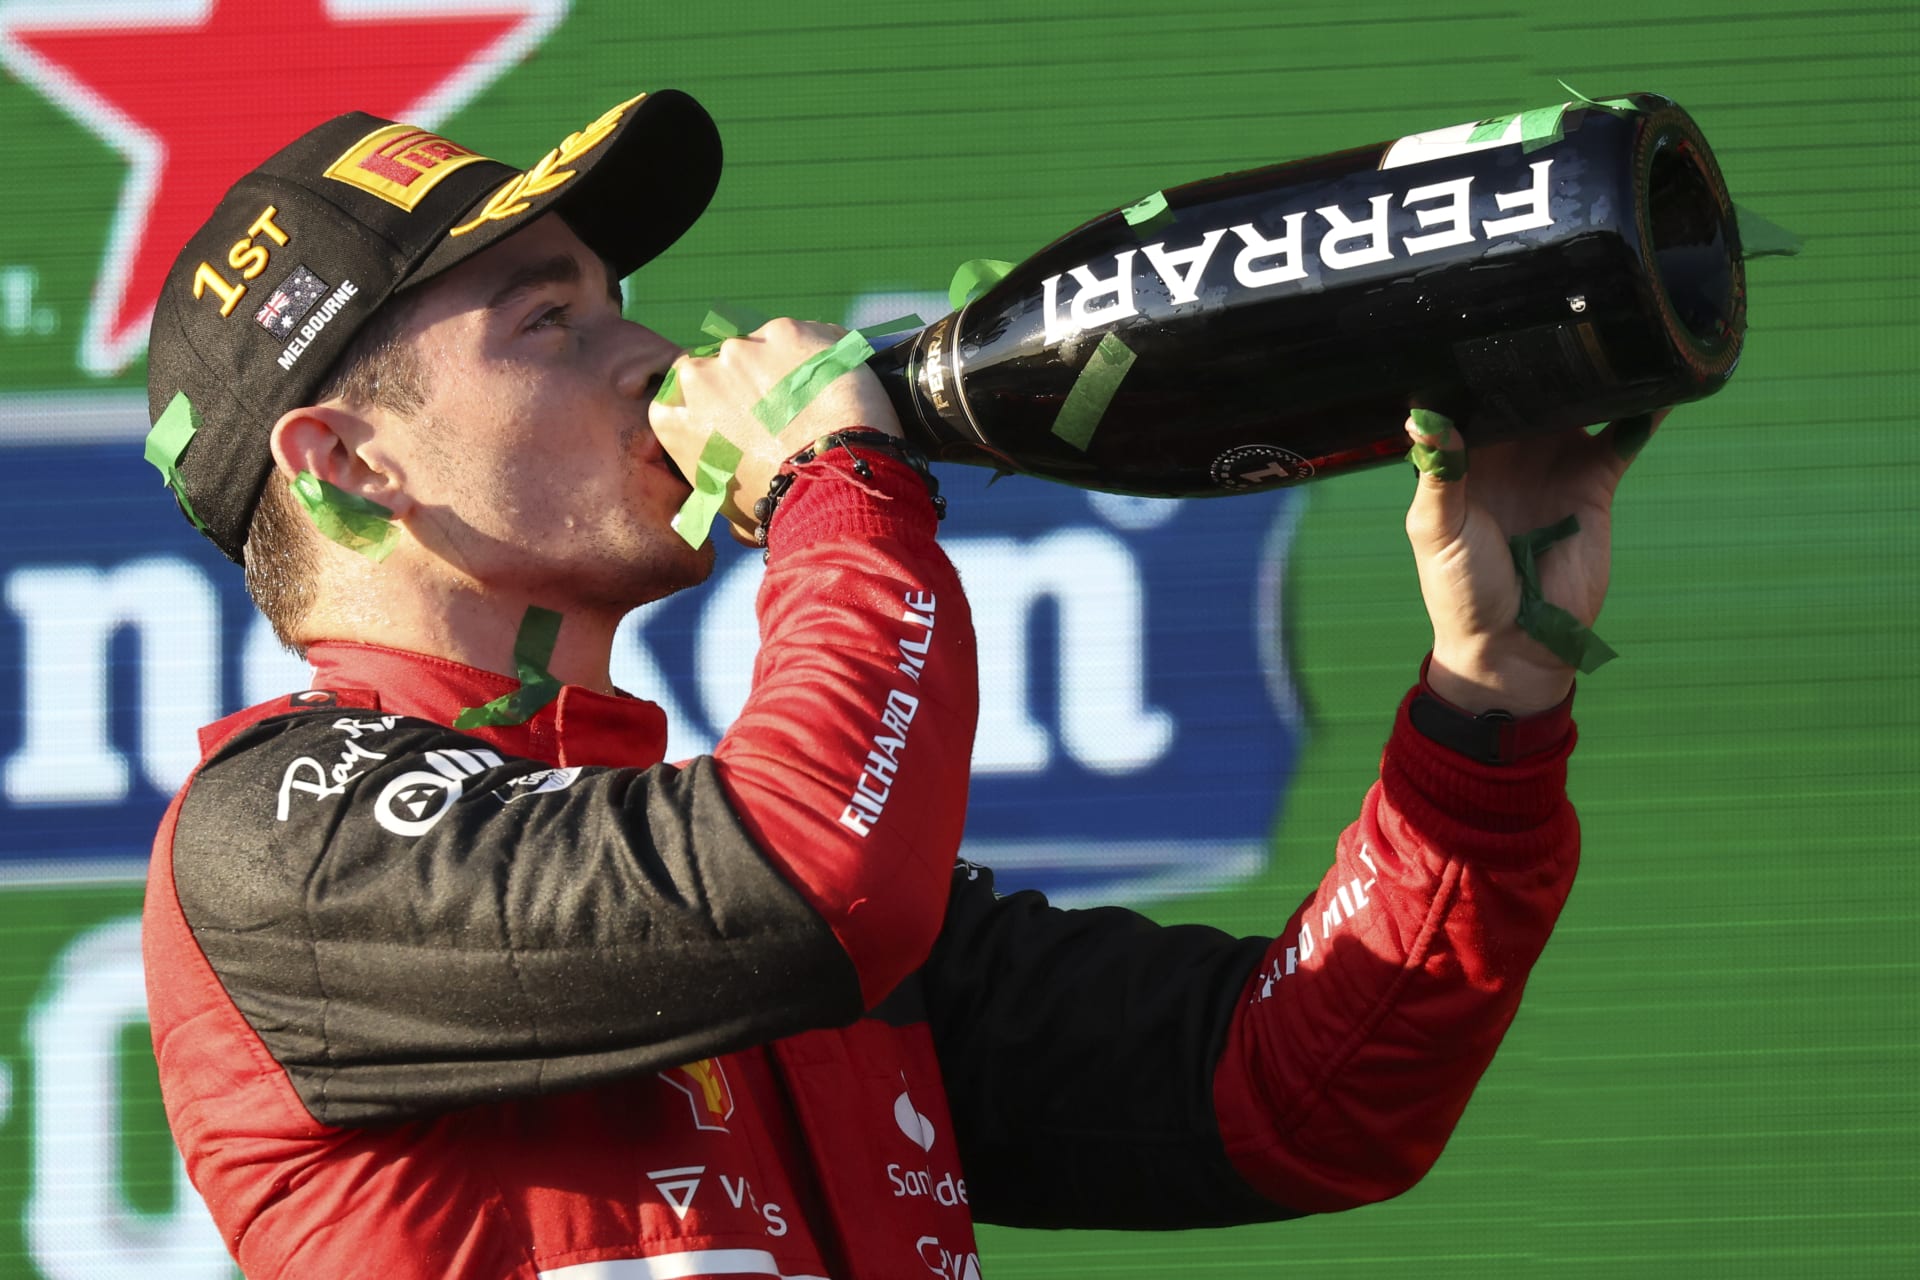 Monacký závodník Charles Leclerc ovládl Velkou cenu Austrálie vozů formule 1